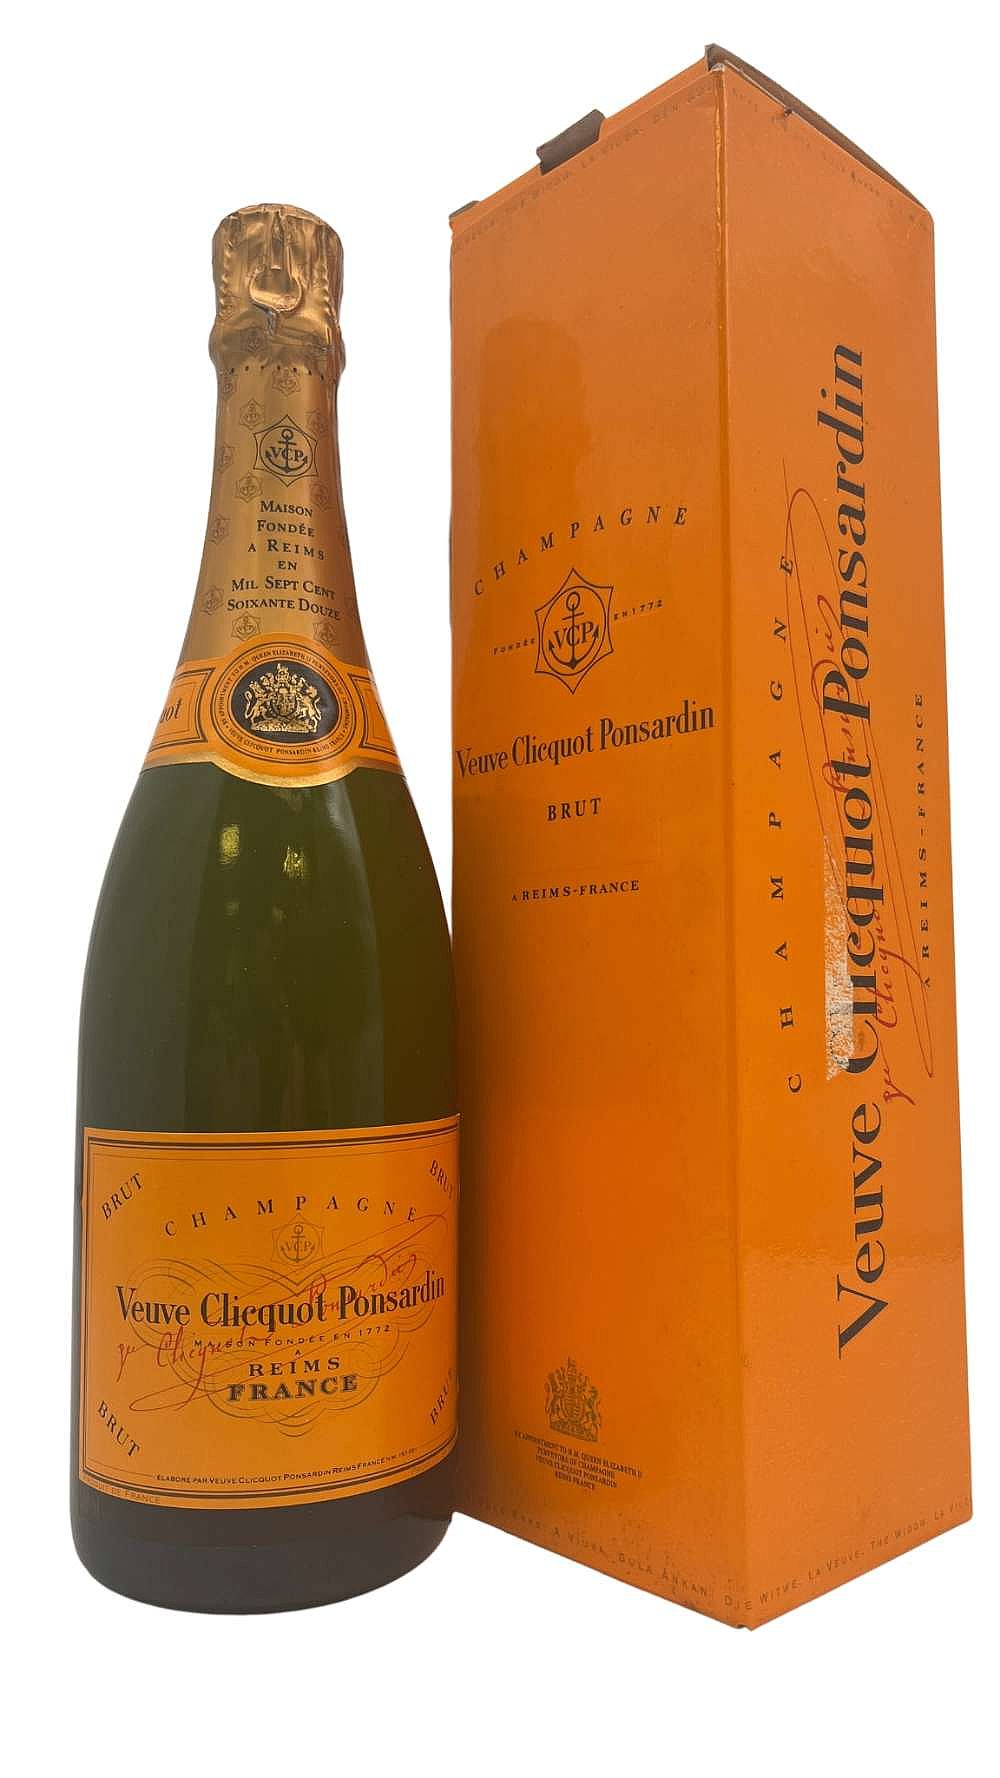 Veuve Clicquot Ponsardin Brut Rose Champagne, France (Vintage Varies) - 1.5 L bottle